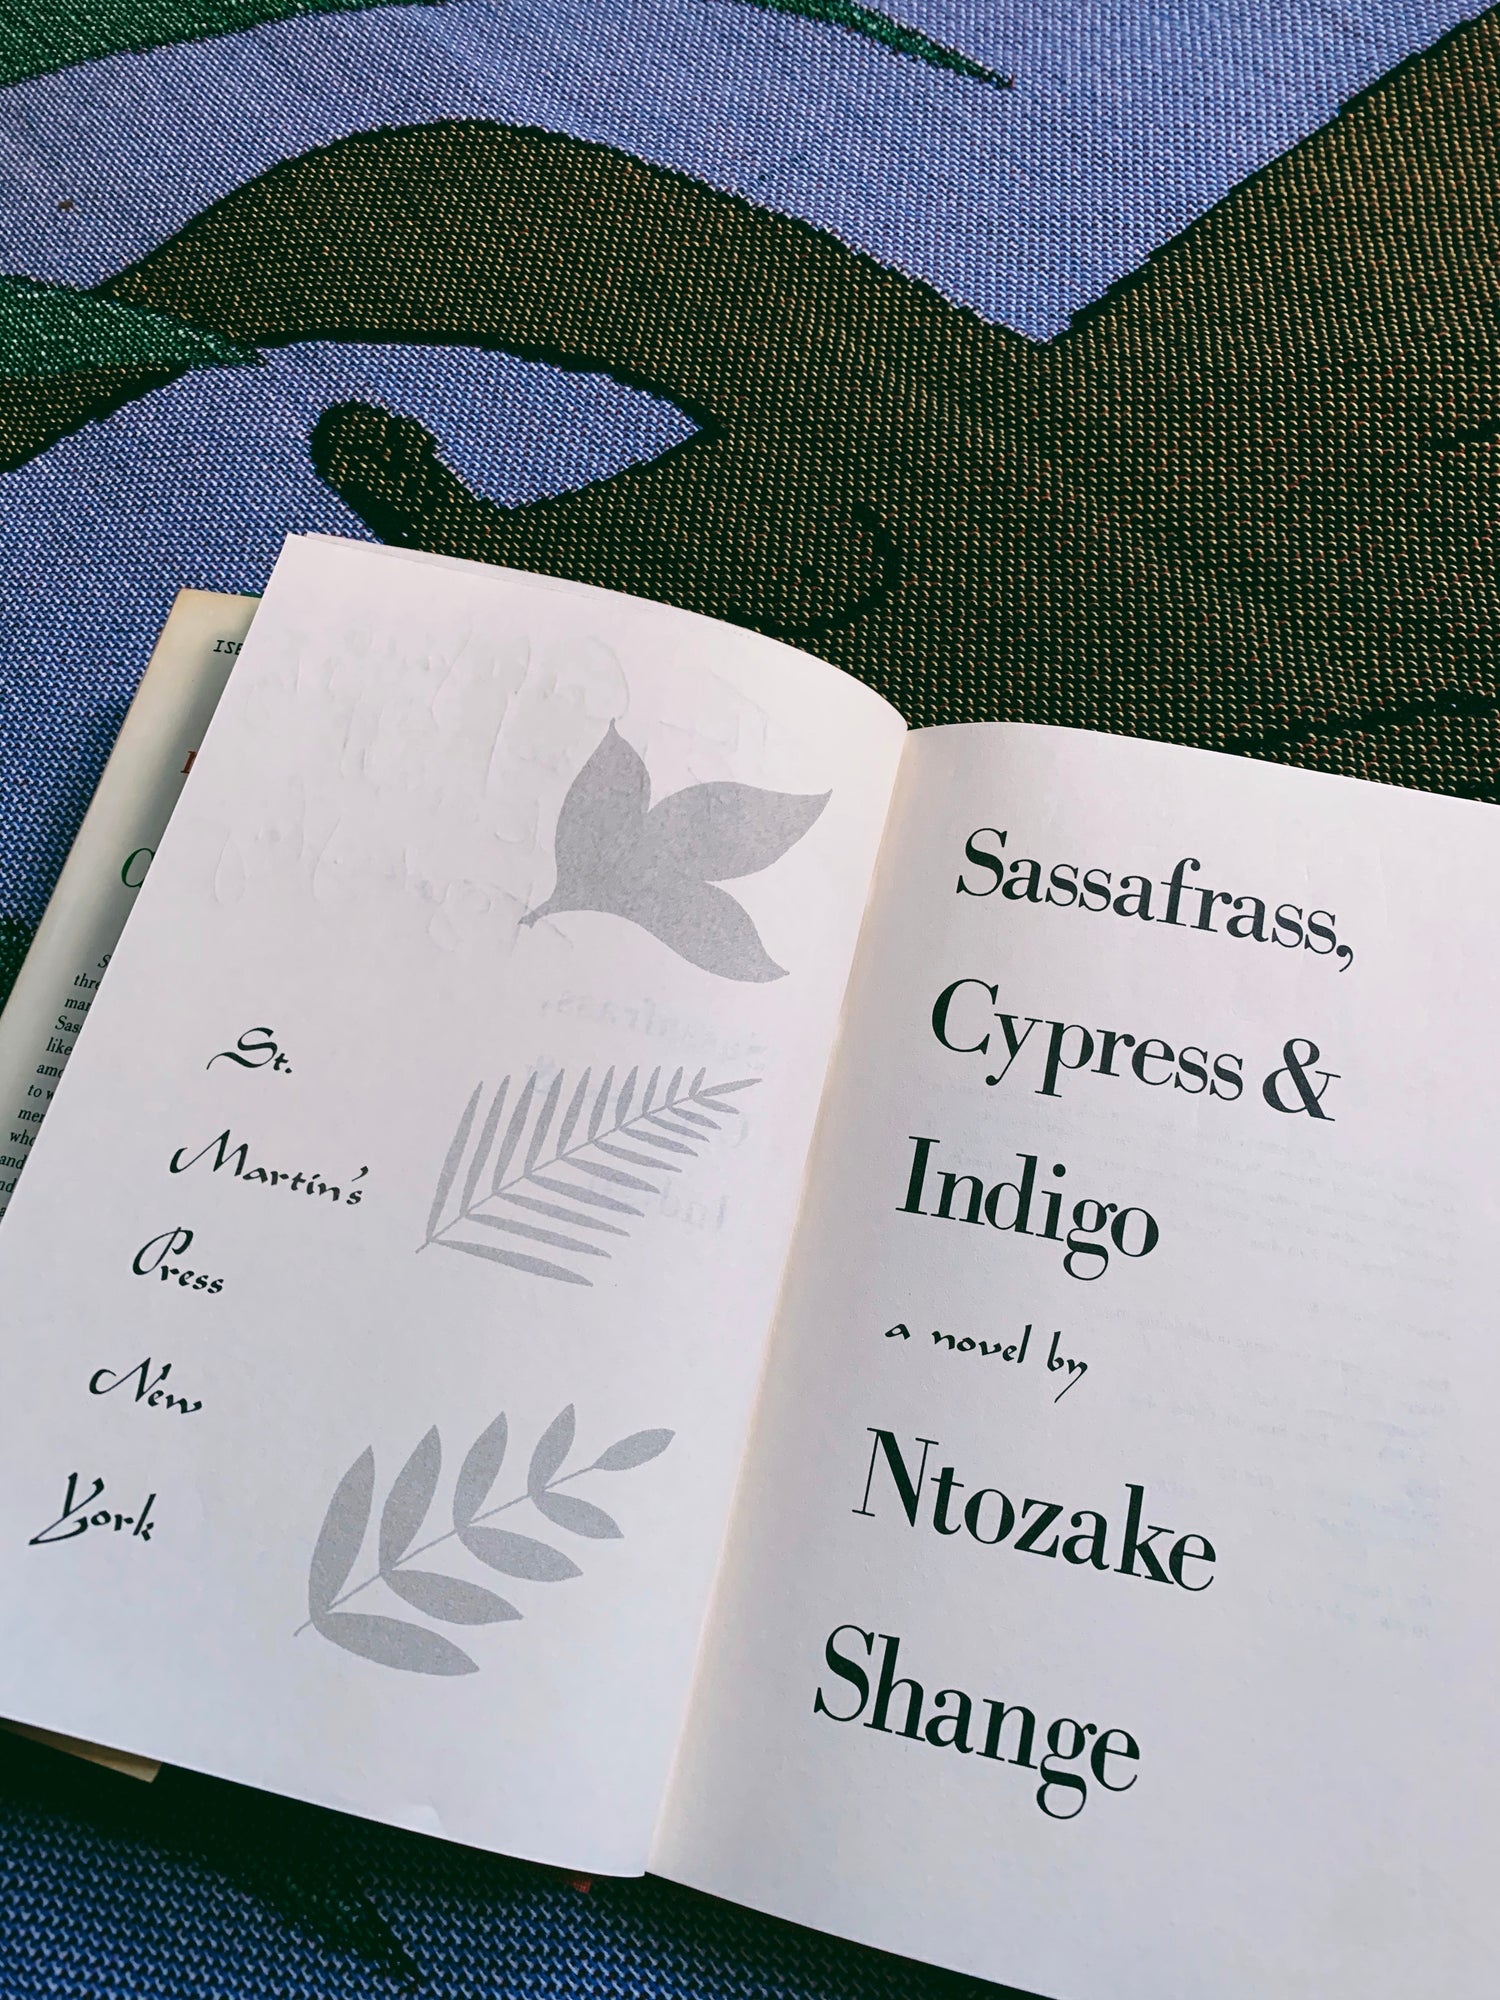 RESERVED: Vintage SIGNED Hardcover “Sassafrass, Cypress &amp; Indigo” by Ntozake Shange (1982)